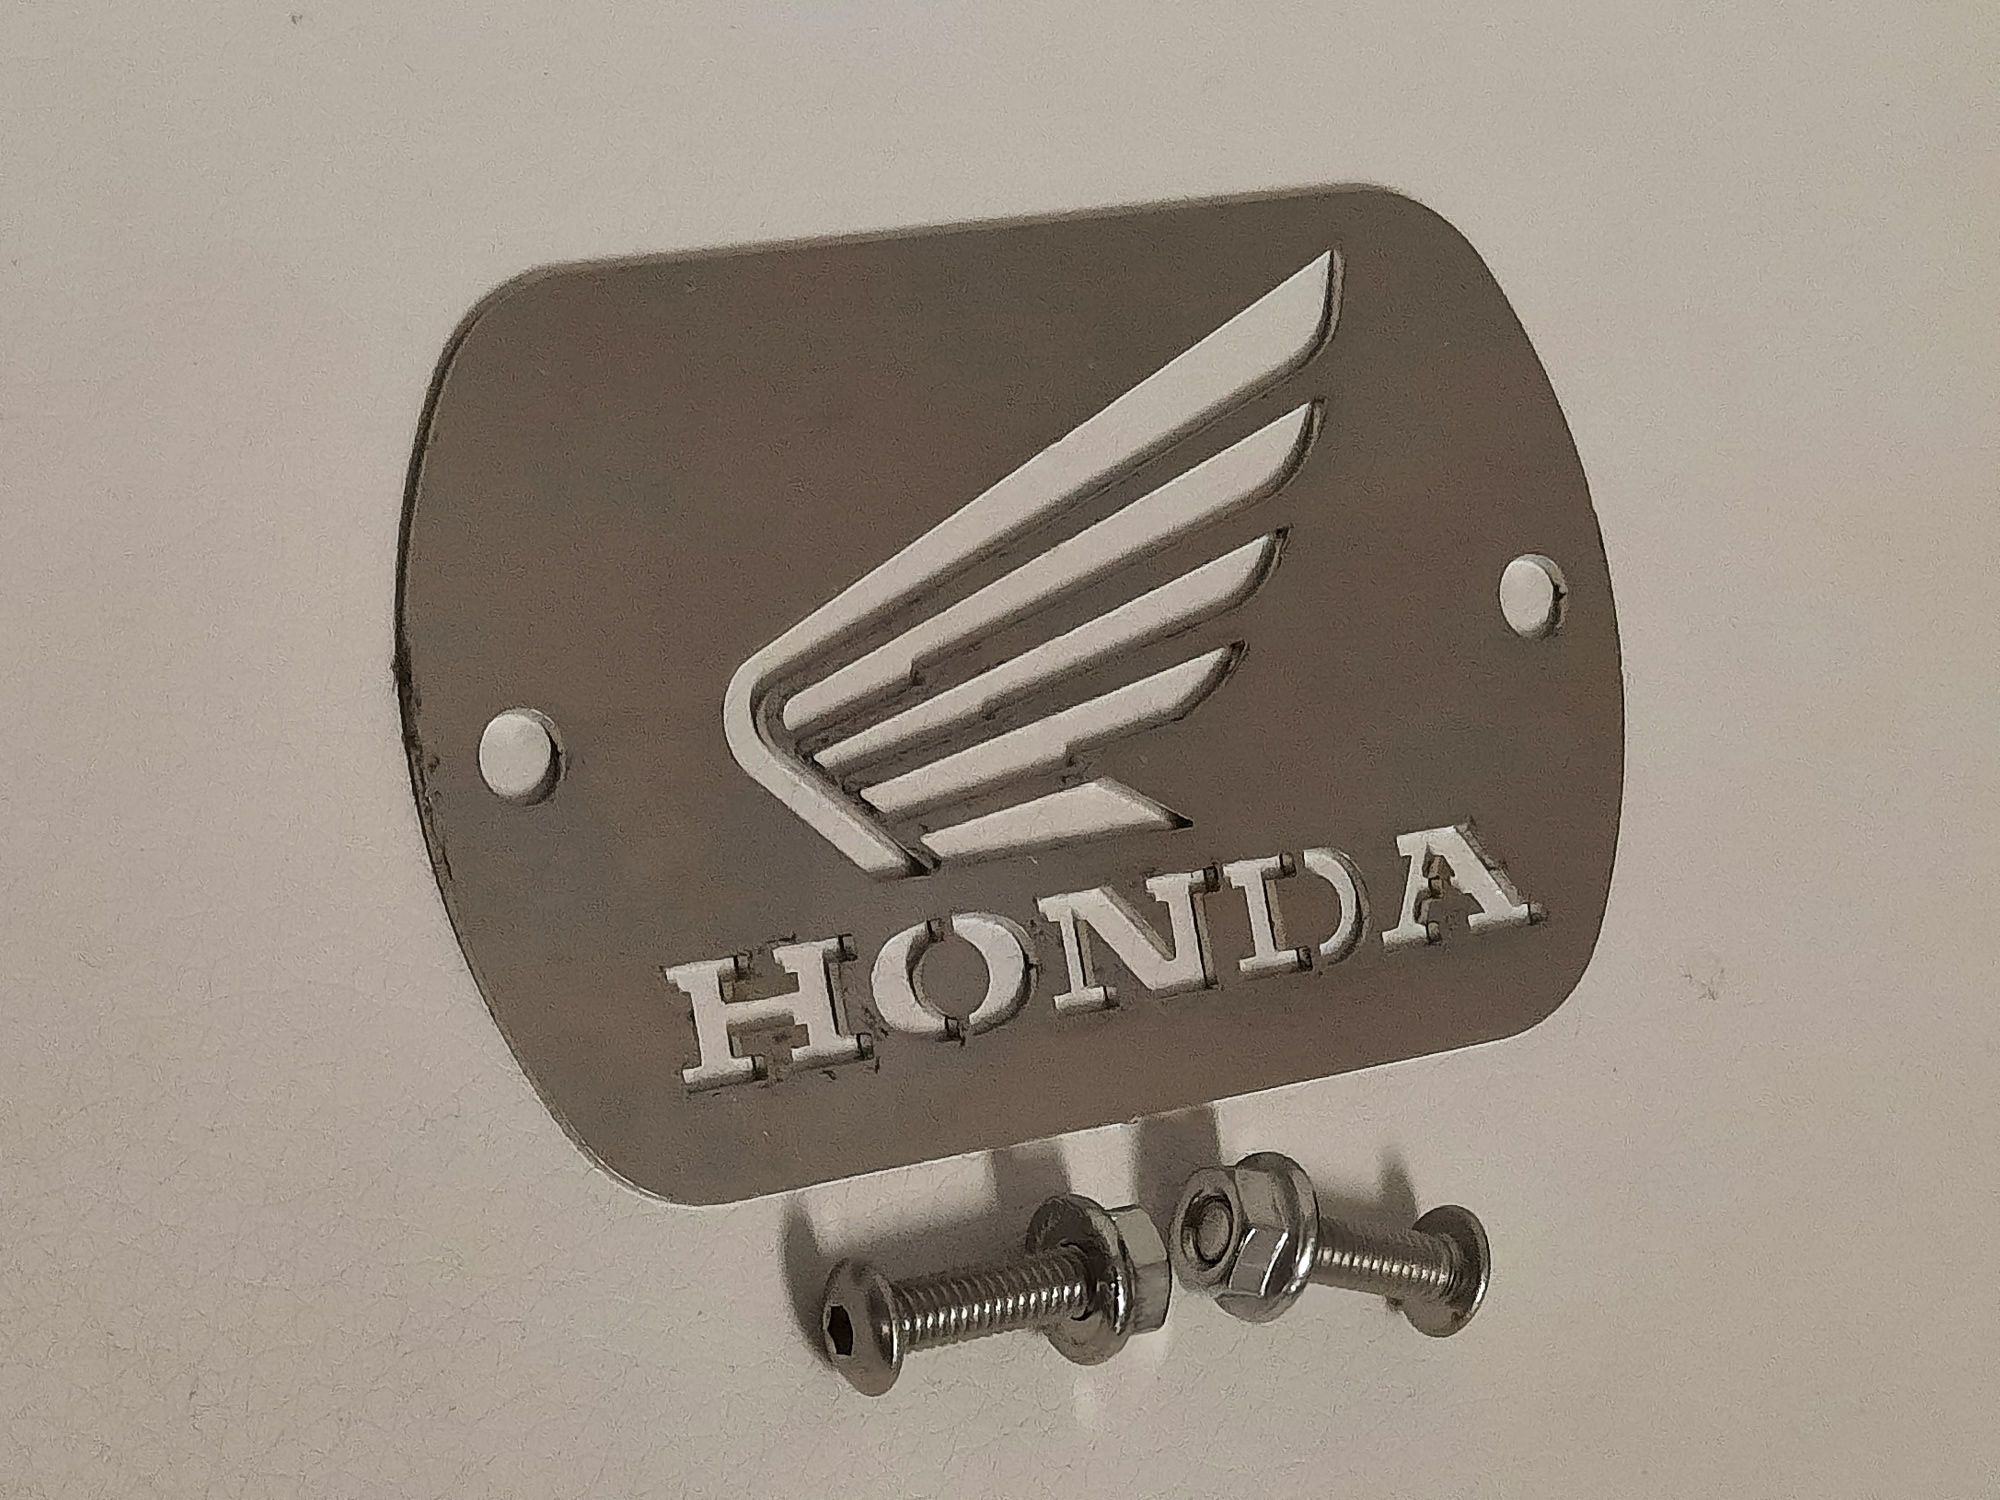 Logo emblemat Honda ozdoba , blaszka